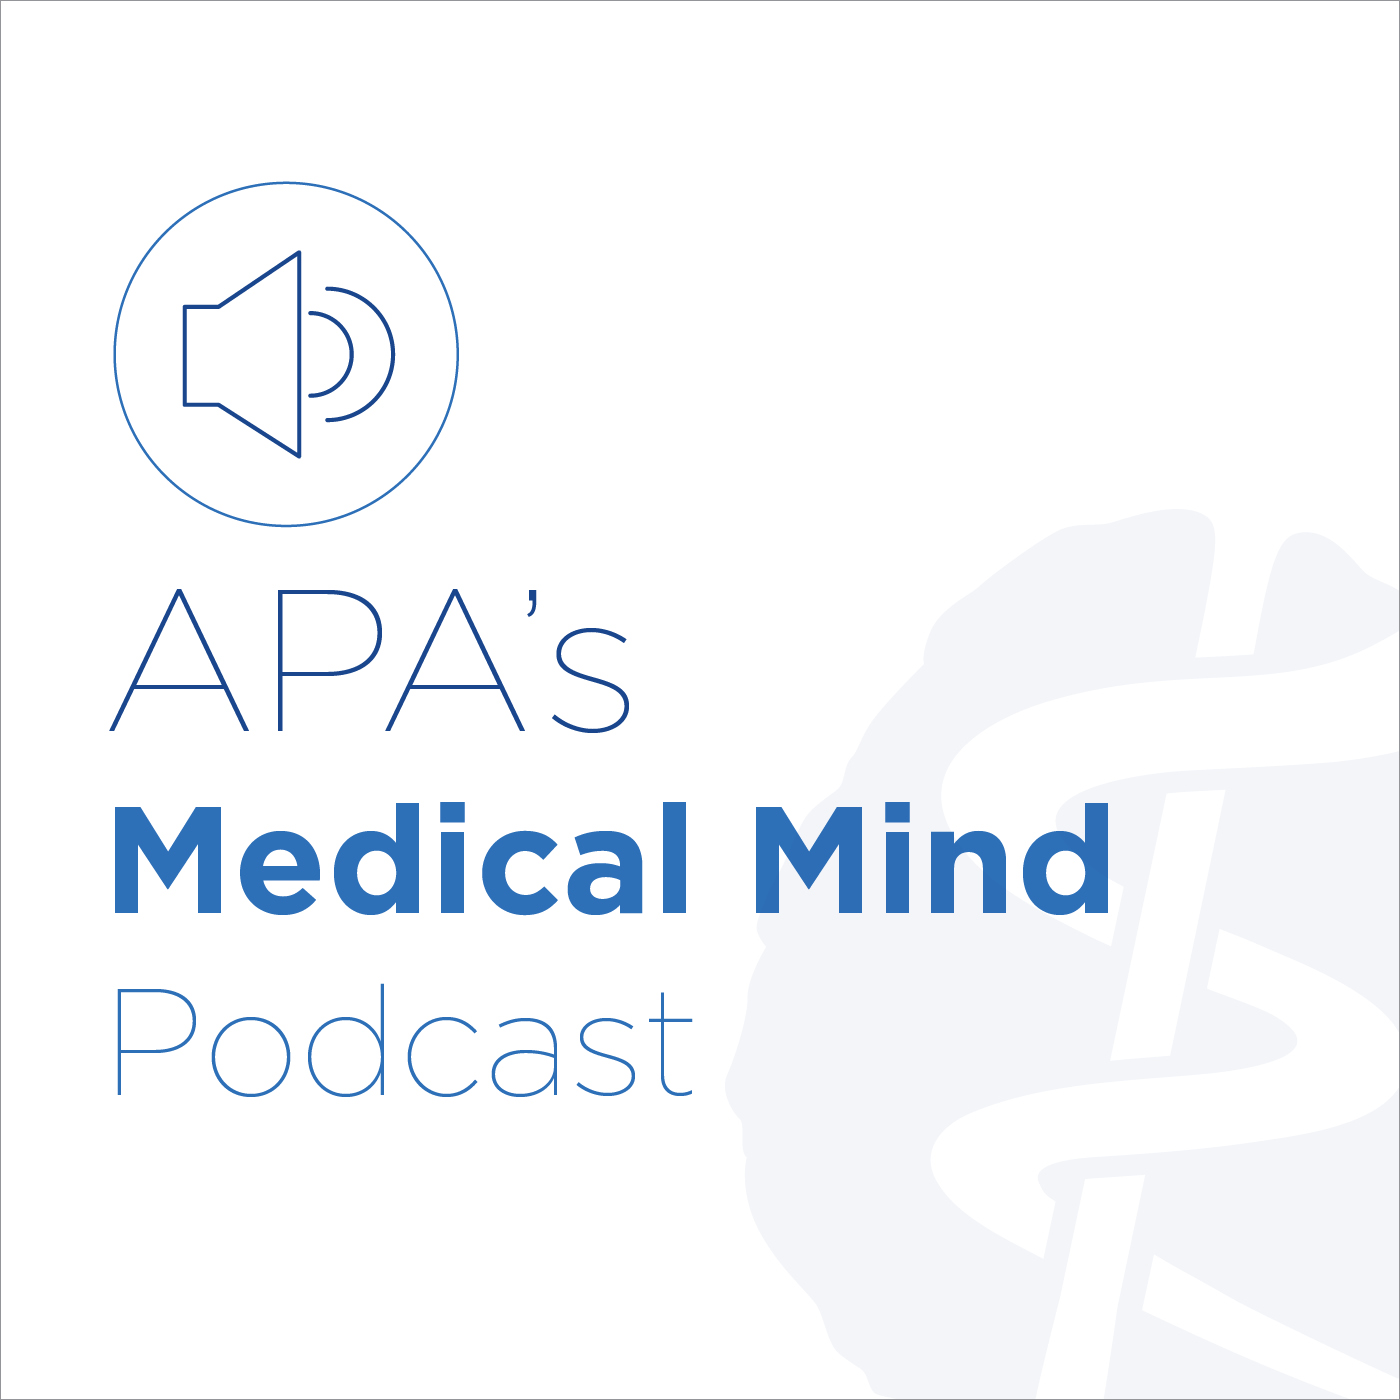 The Medical Mind podcast logo